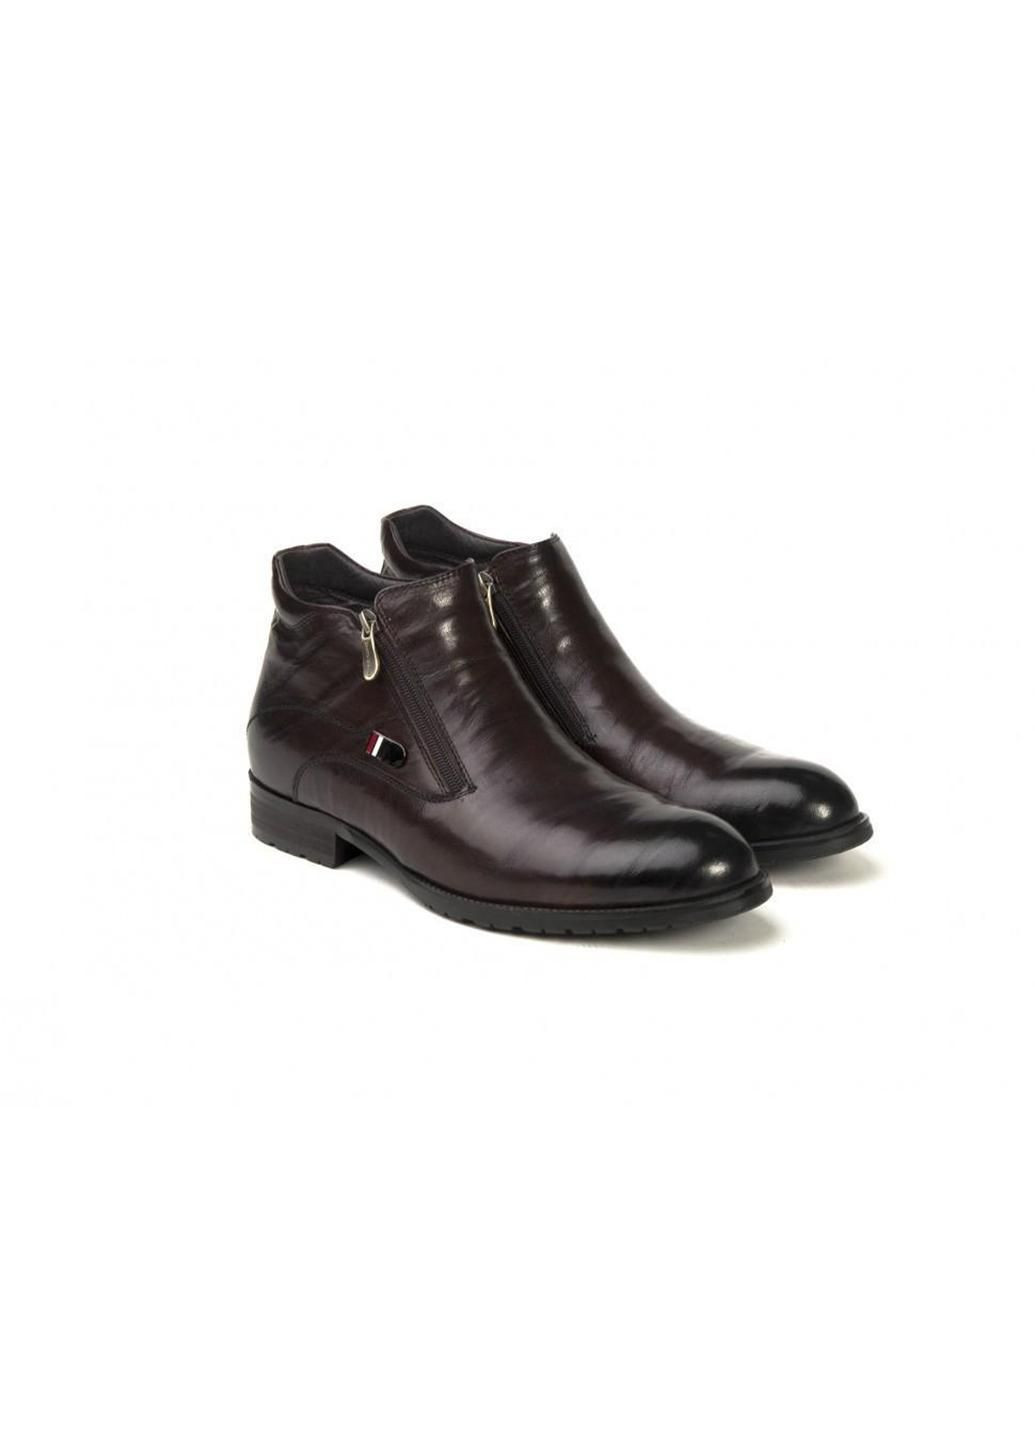 Коричневые зимние ботинки 7134015 цвет коричневый Carlo Delari